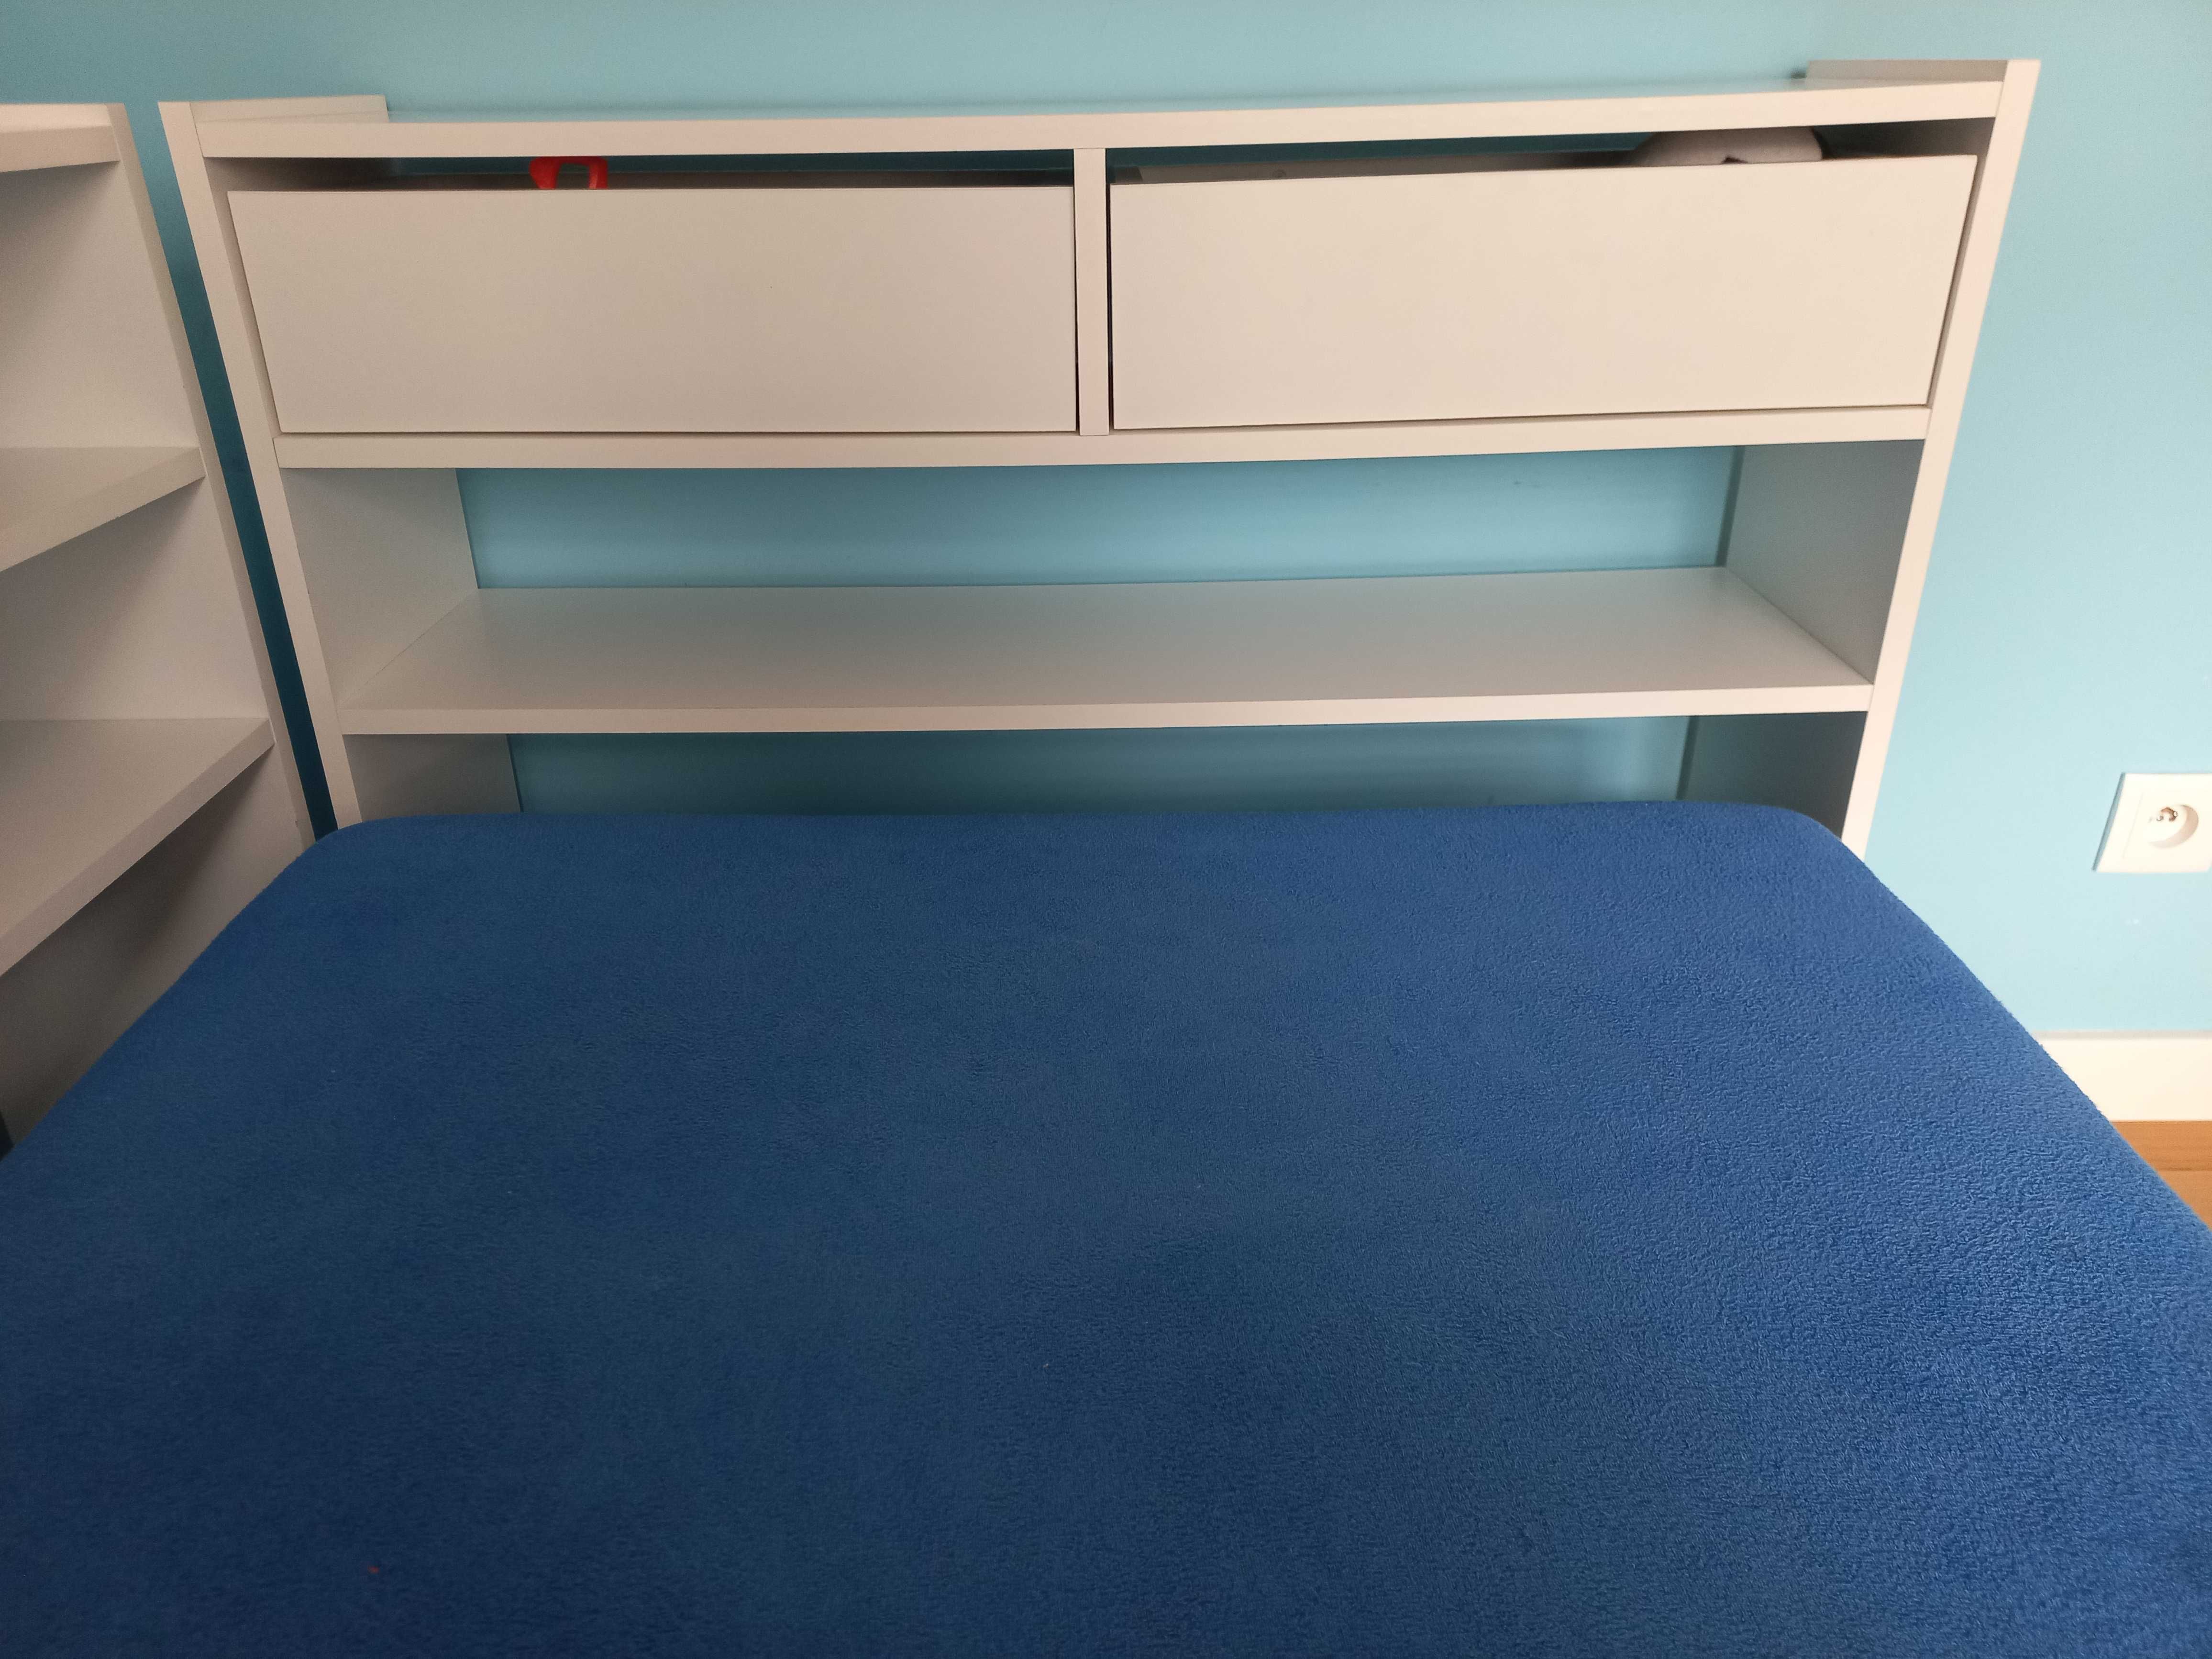 Łóżko z szufladami i półkami RENATO II - 90 × 190 cm - biały